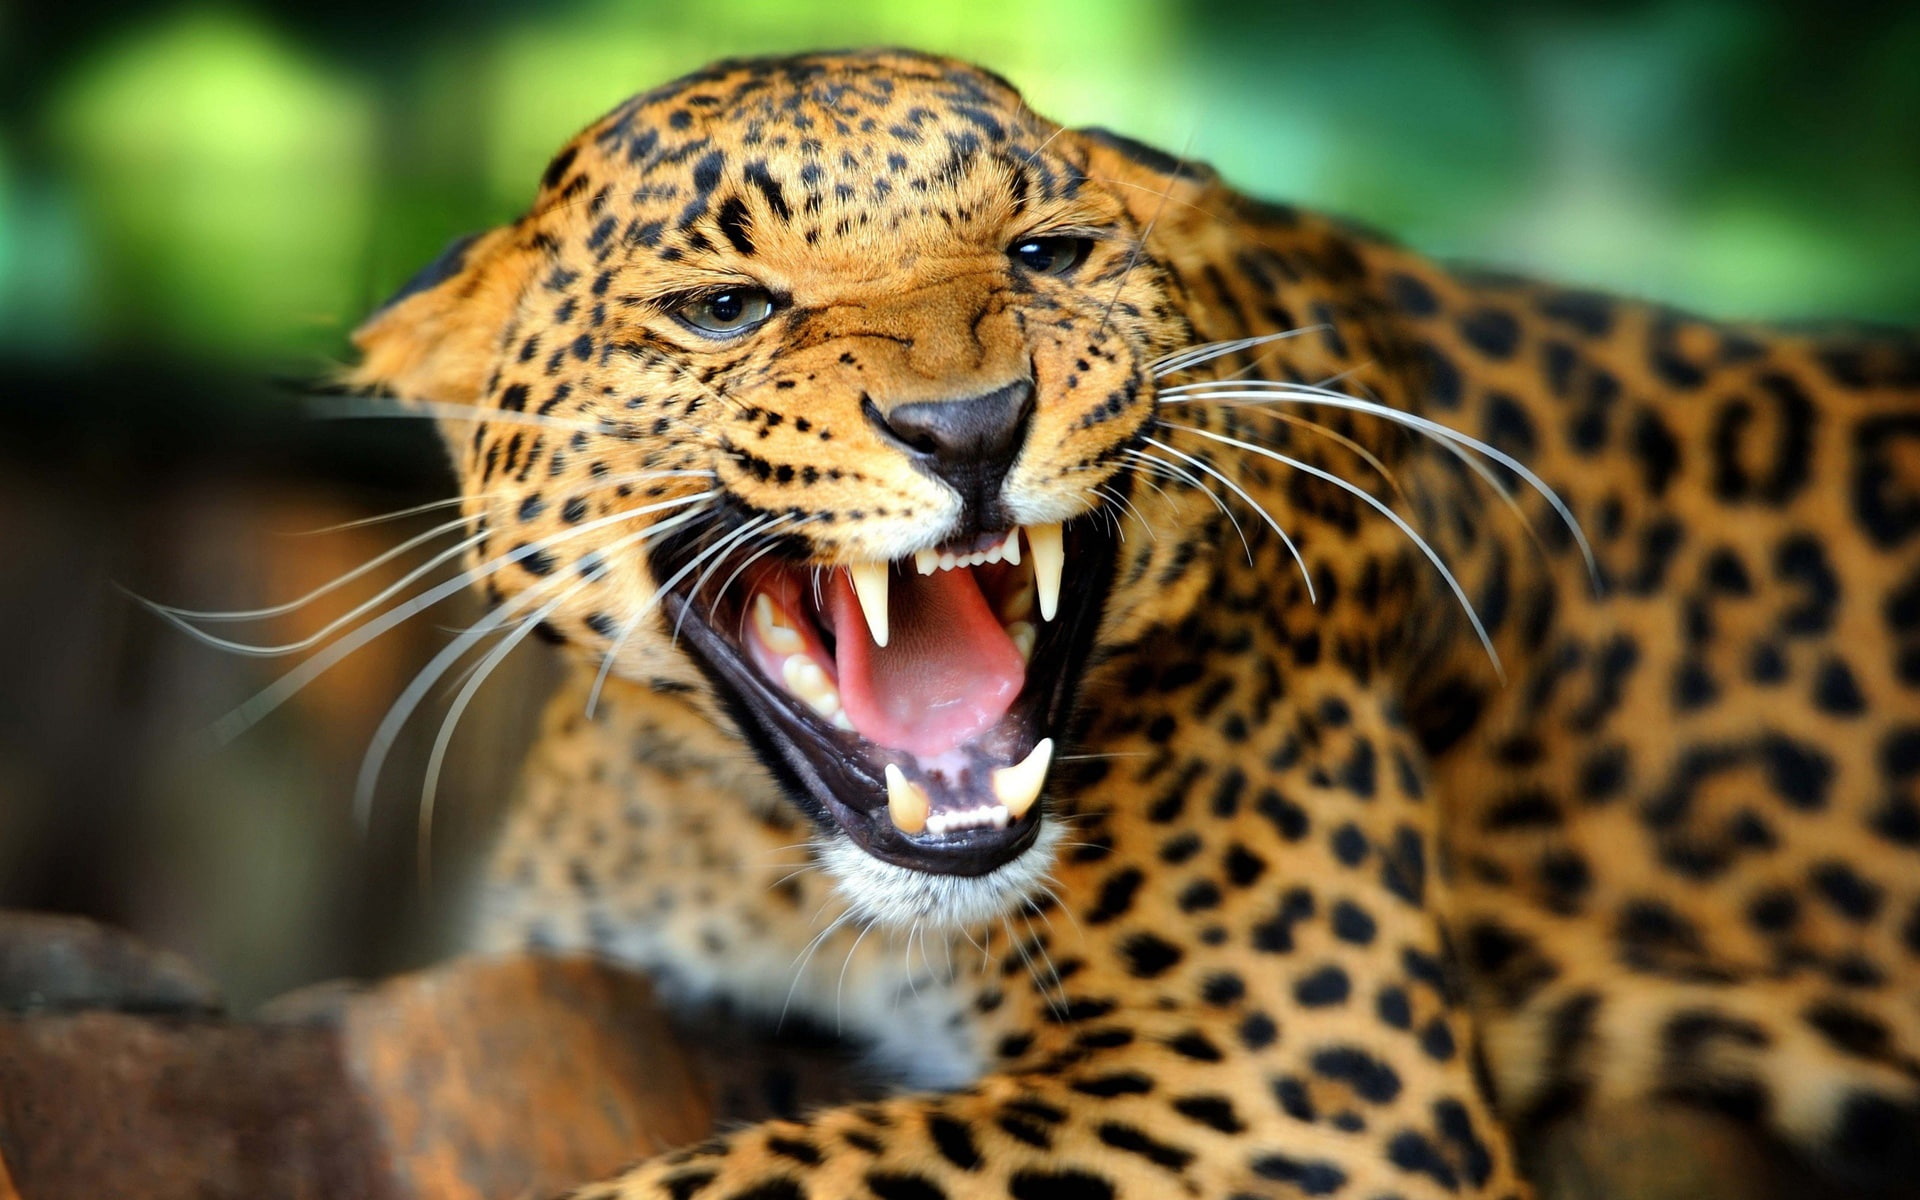 Cheetah facial features, sharp teeth